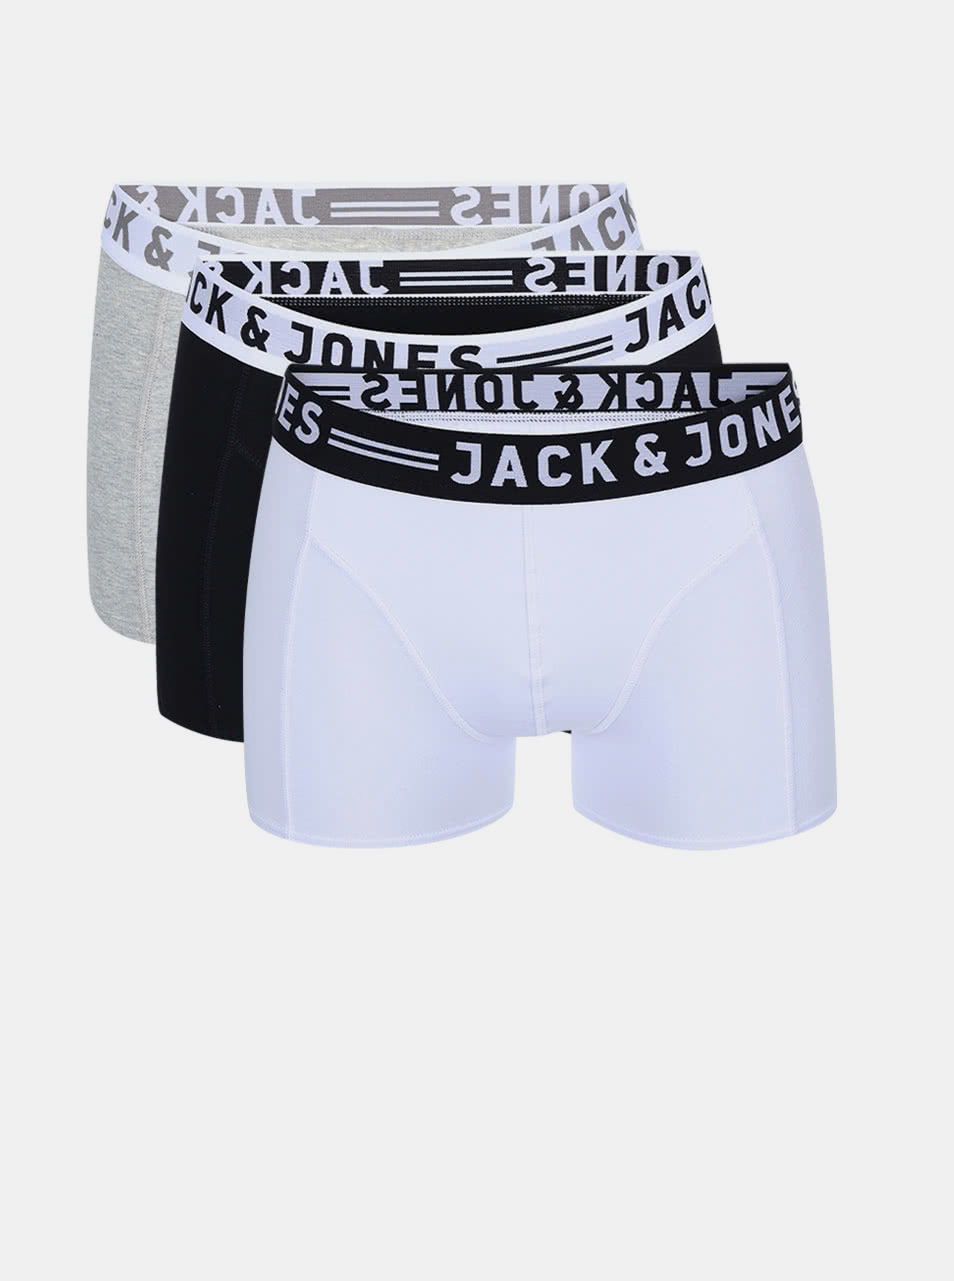 Fotografie Sada tří boxerek v šedé, bílé a černé barvě Jack & Jones Sense